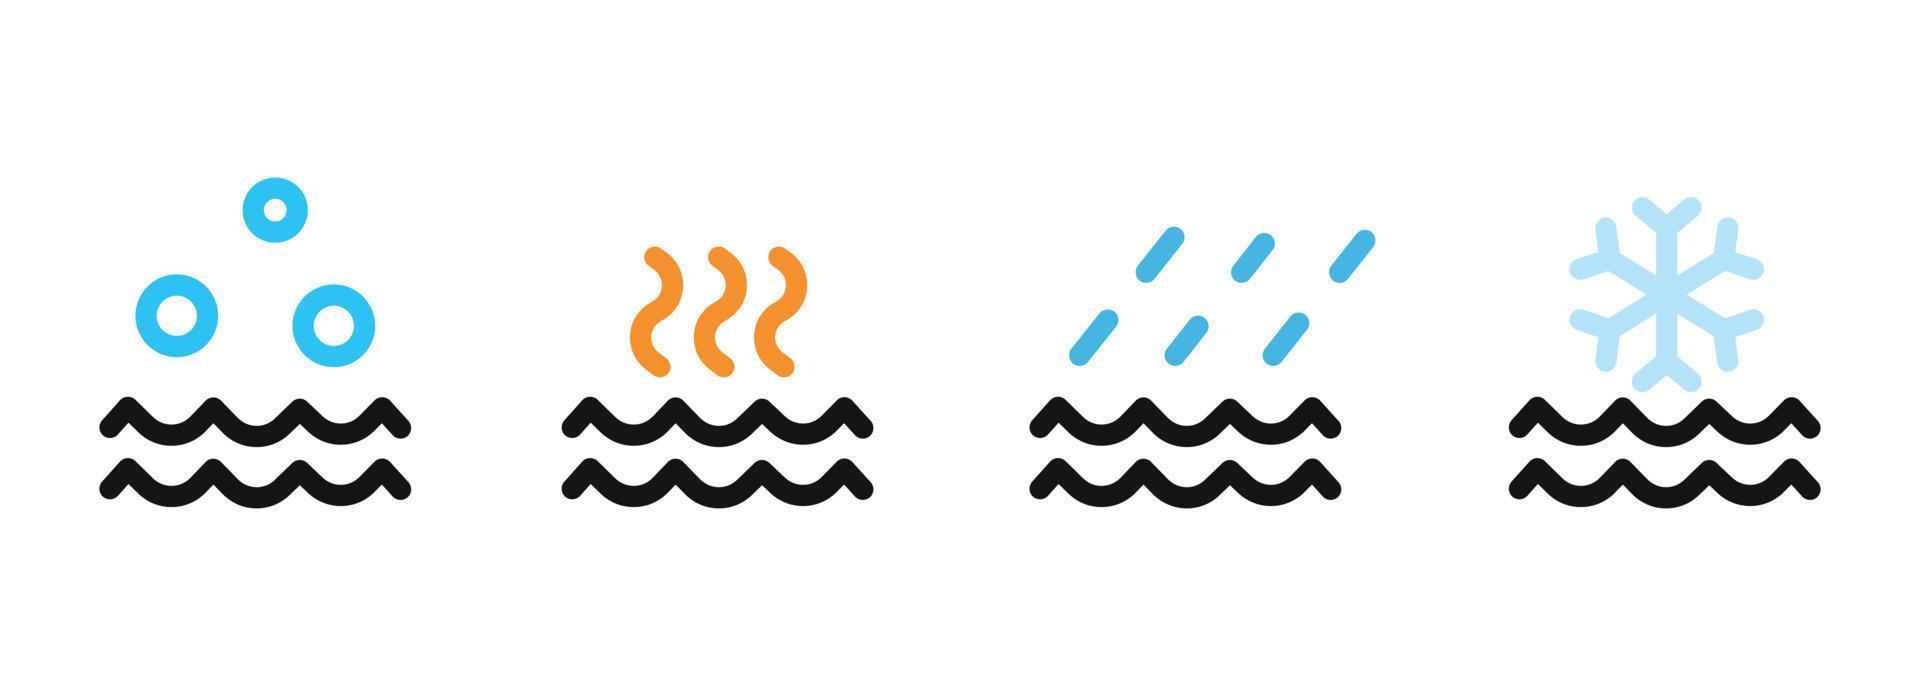 conjunto de varios diseños de iconos de agua. símbolo meteorológico simple para el elemento de diseño vector